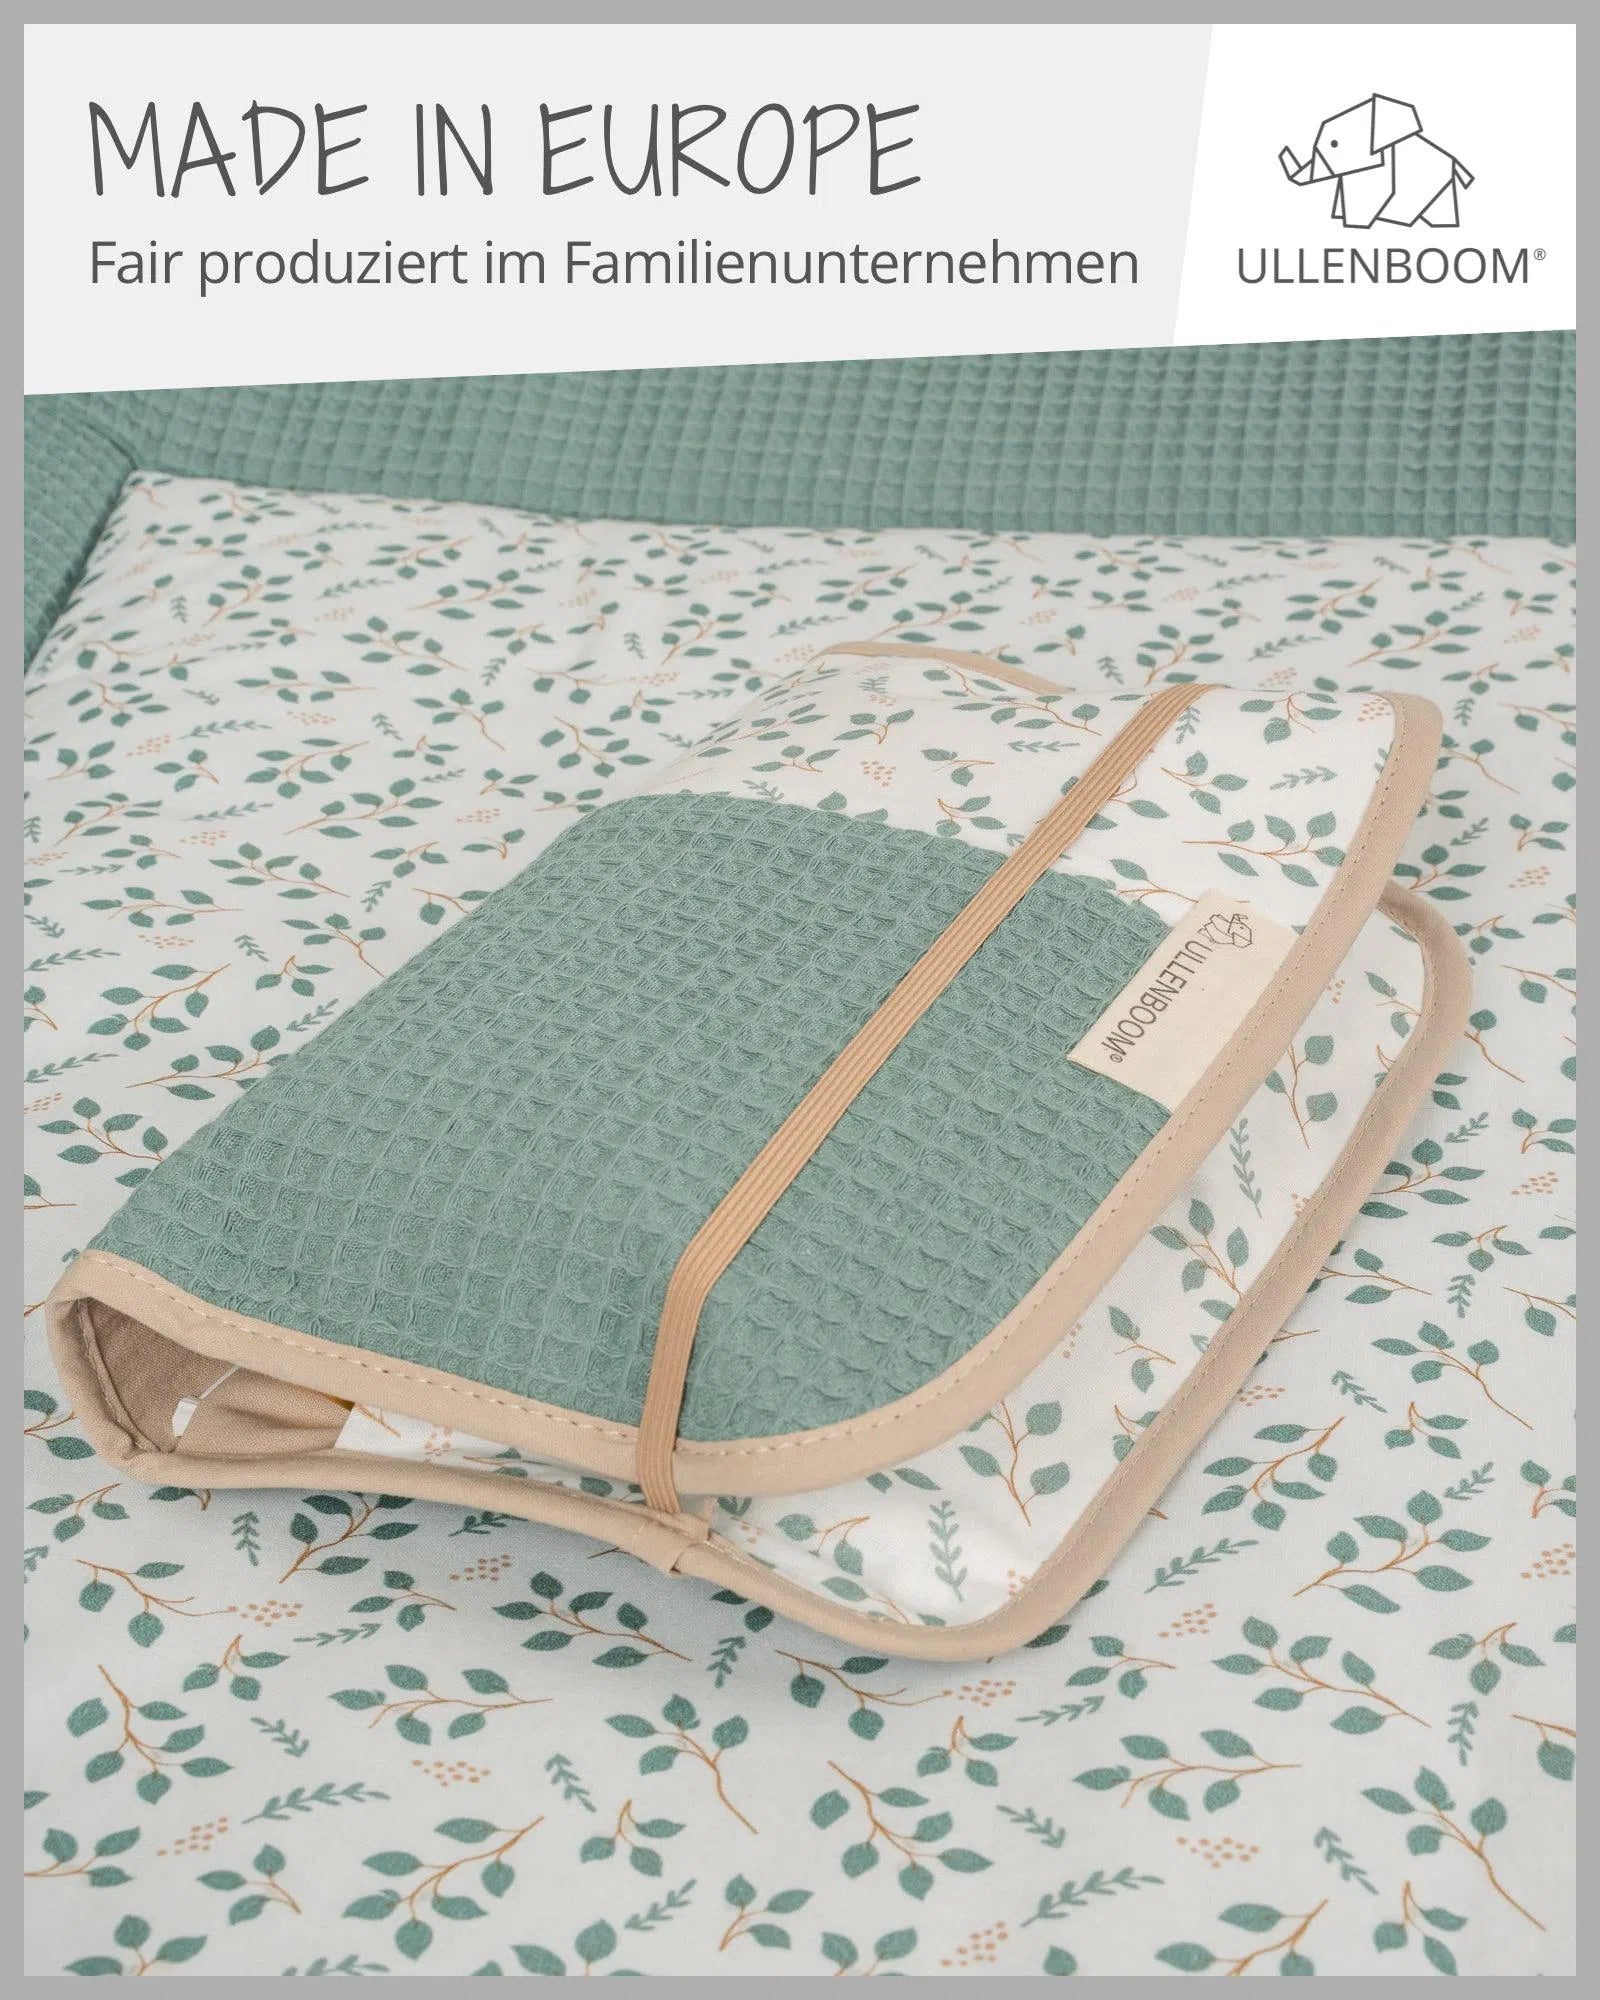 Windeltasche Waffelpiqué Motiv FLORAL GRÜN-ULLENBOOM-18 x 27 cm-ULLENBOOM Baby